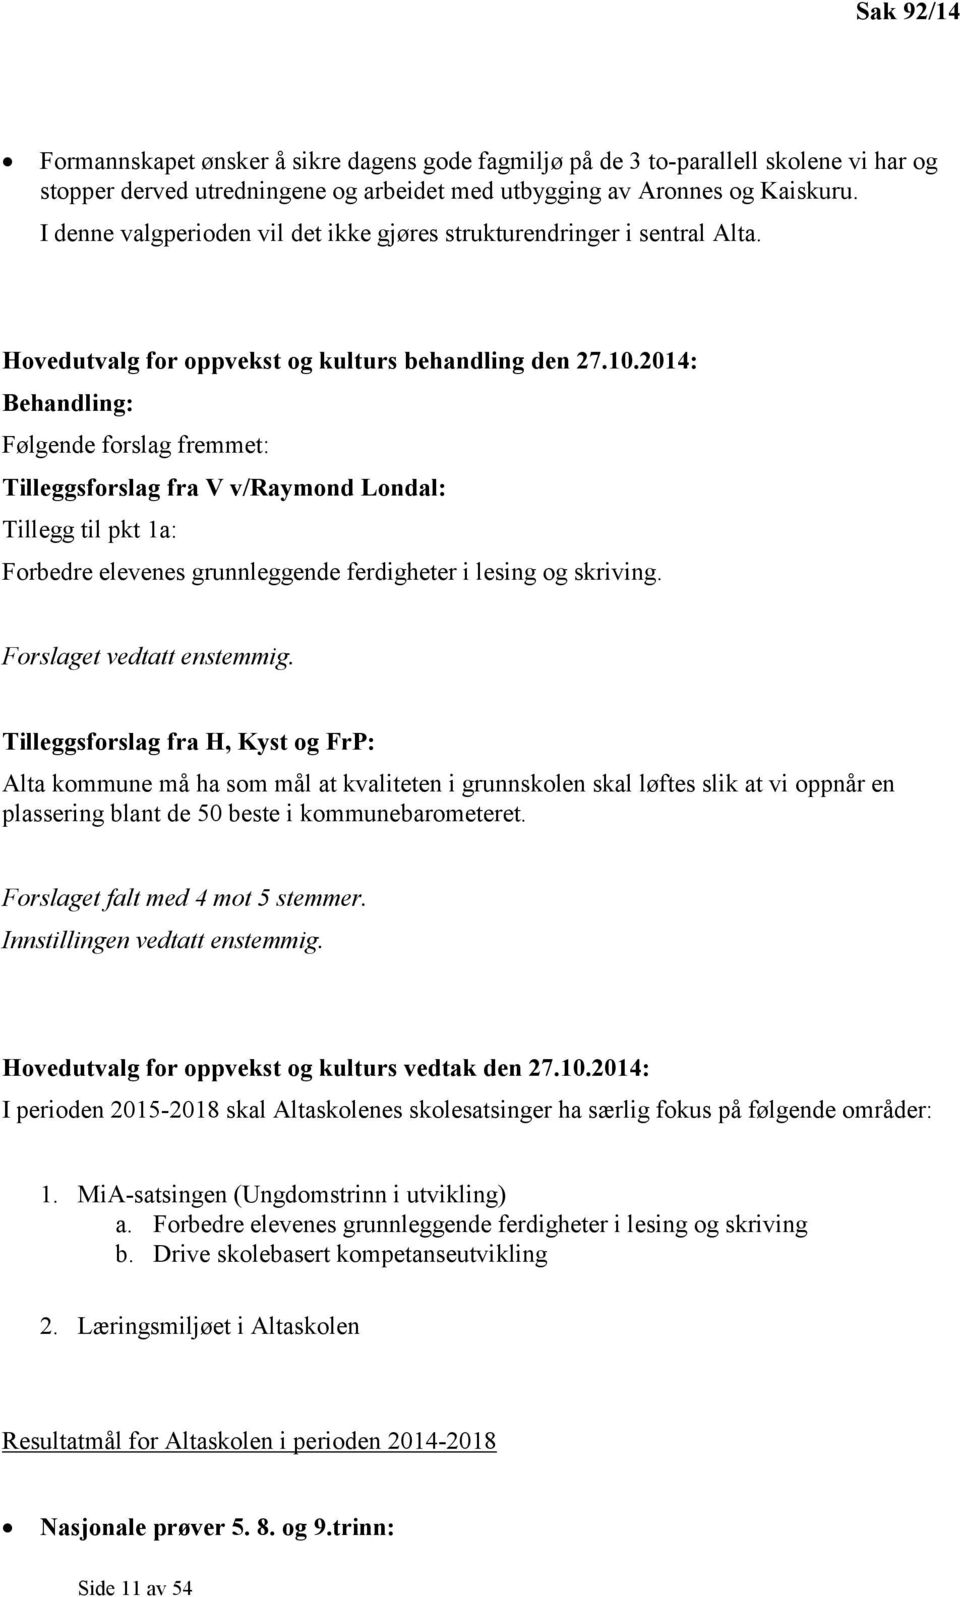 2014: Behandling: Følgende forslag fremmet: Tilleggsforslag fra V v/raymond Londal: Tillegg til pkt 1a: Forbedre elevenes grunnleggende ferdigheter i lesing og skriving. Forslaget vedtatt enstemmig.